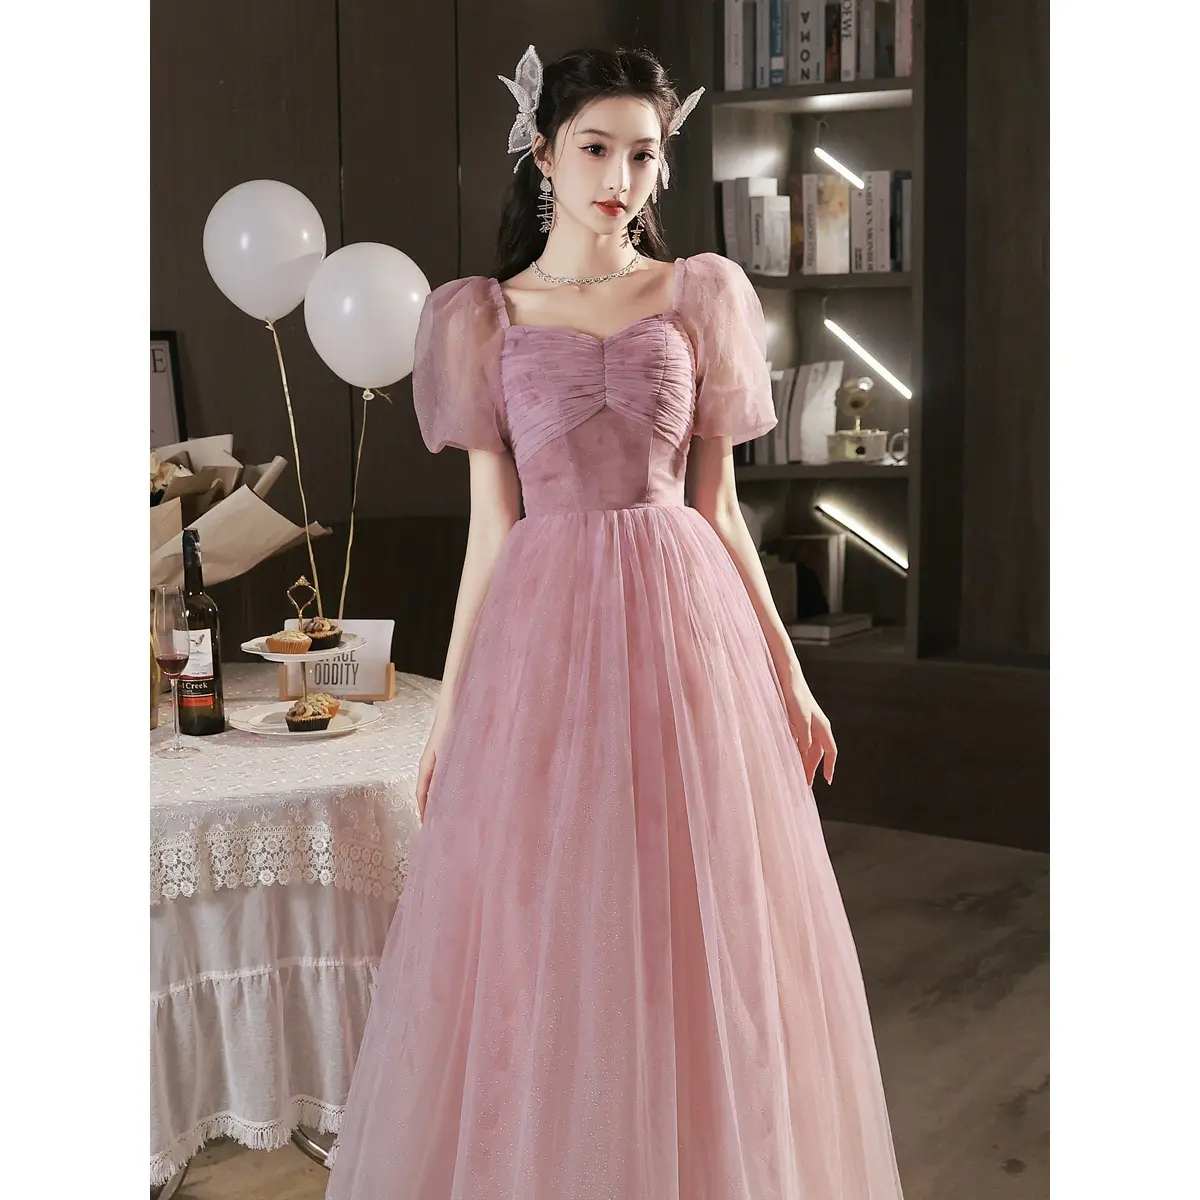 Nr gaun pesta malam wanita, Gaun lengan puff panjang elegan gaya manis merah muda untuk perempuan